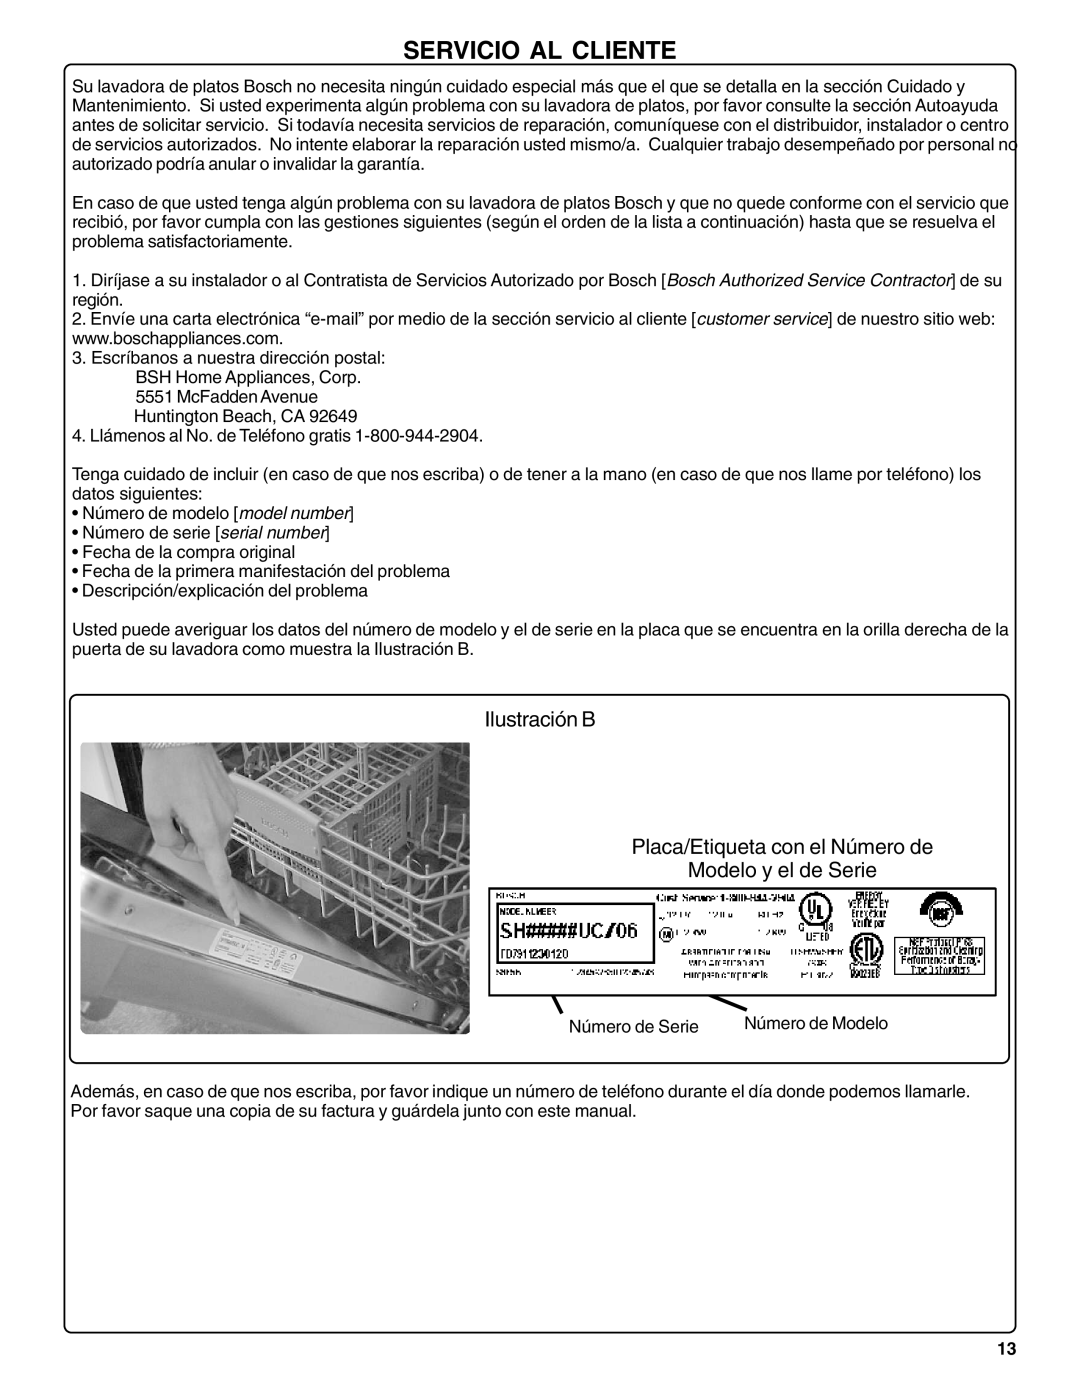 Bosch Appliances SHX36L manual Servicio Al Cliente, Ilustración B Placa/Etiqueta con el Número de, Modelo y el de Serie 